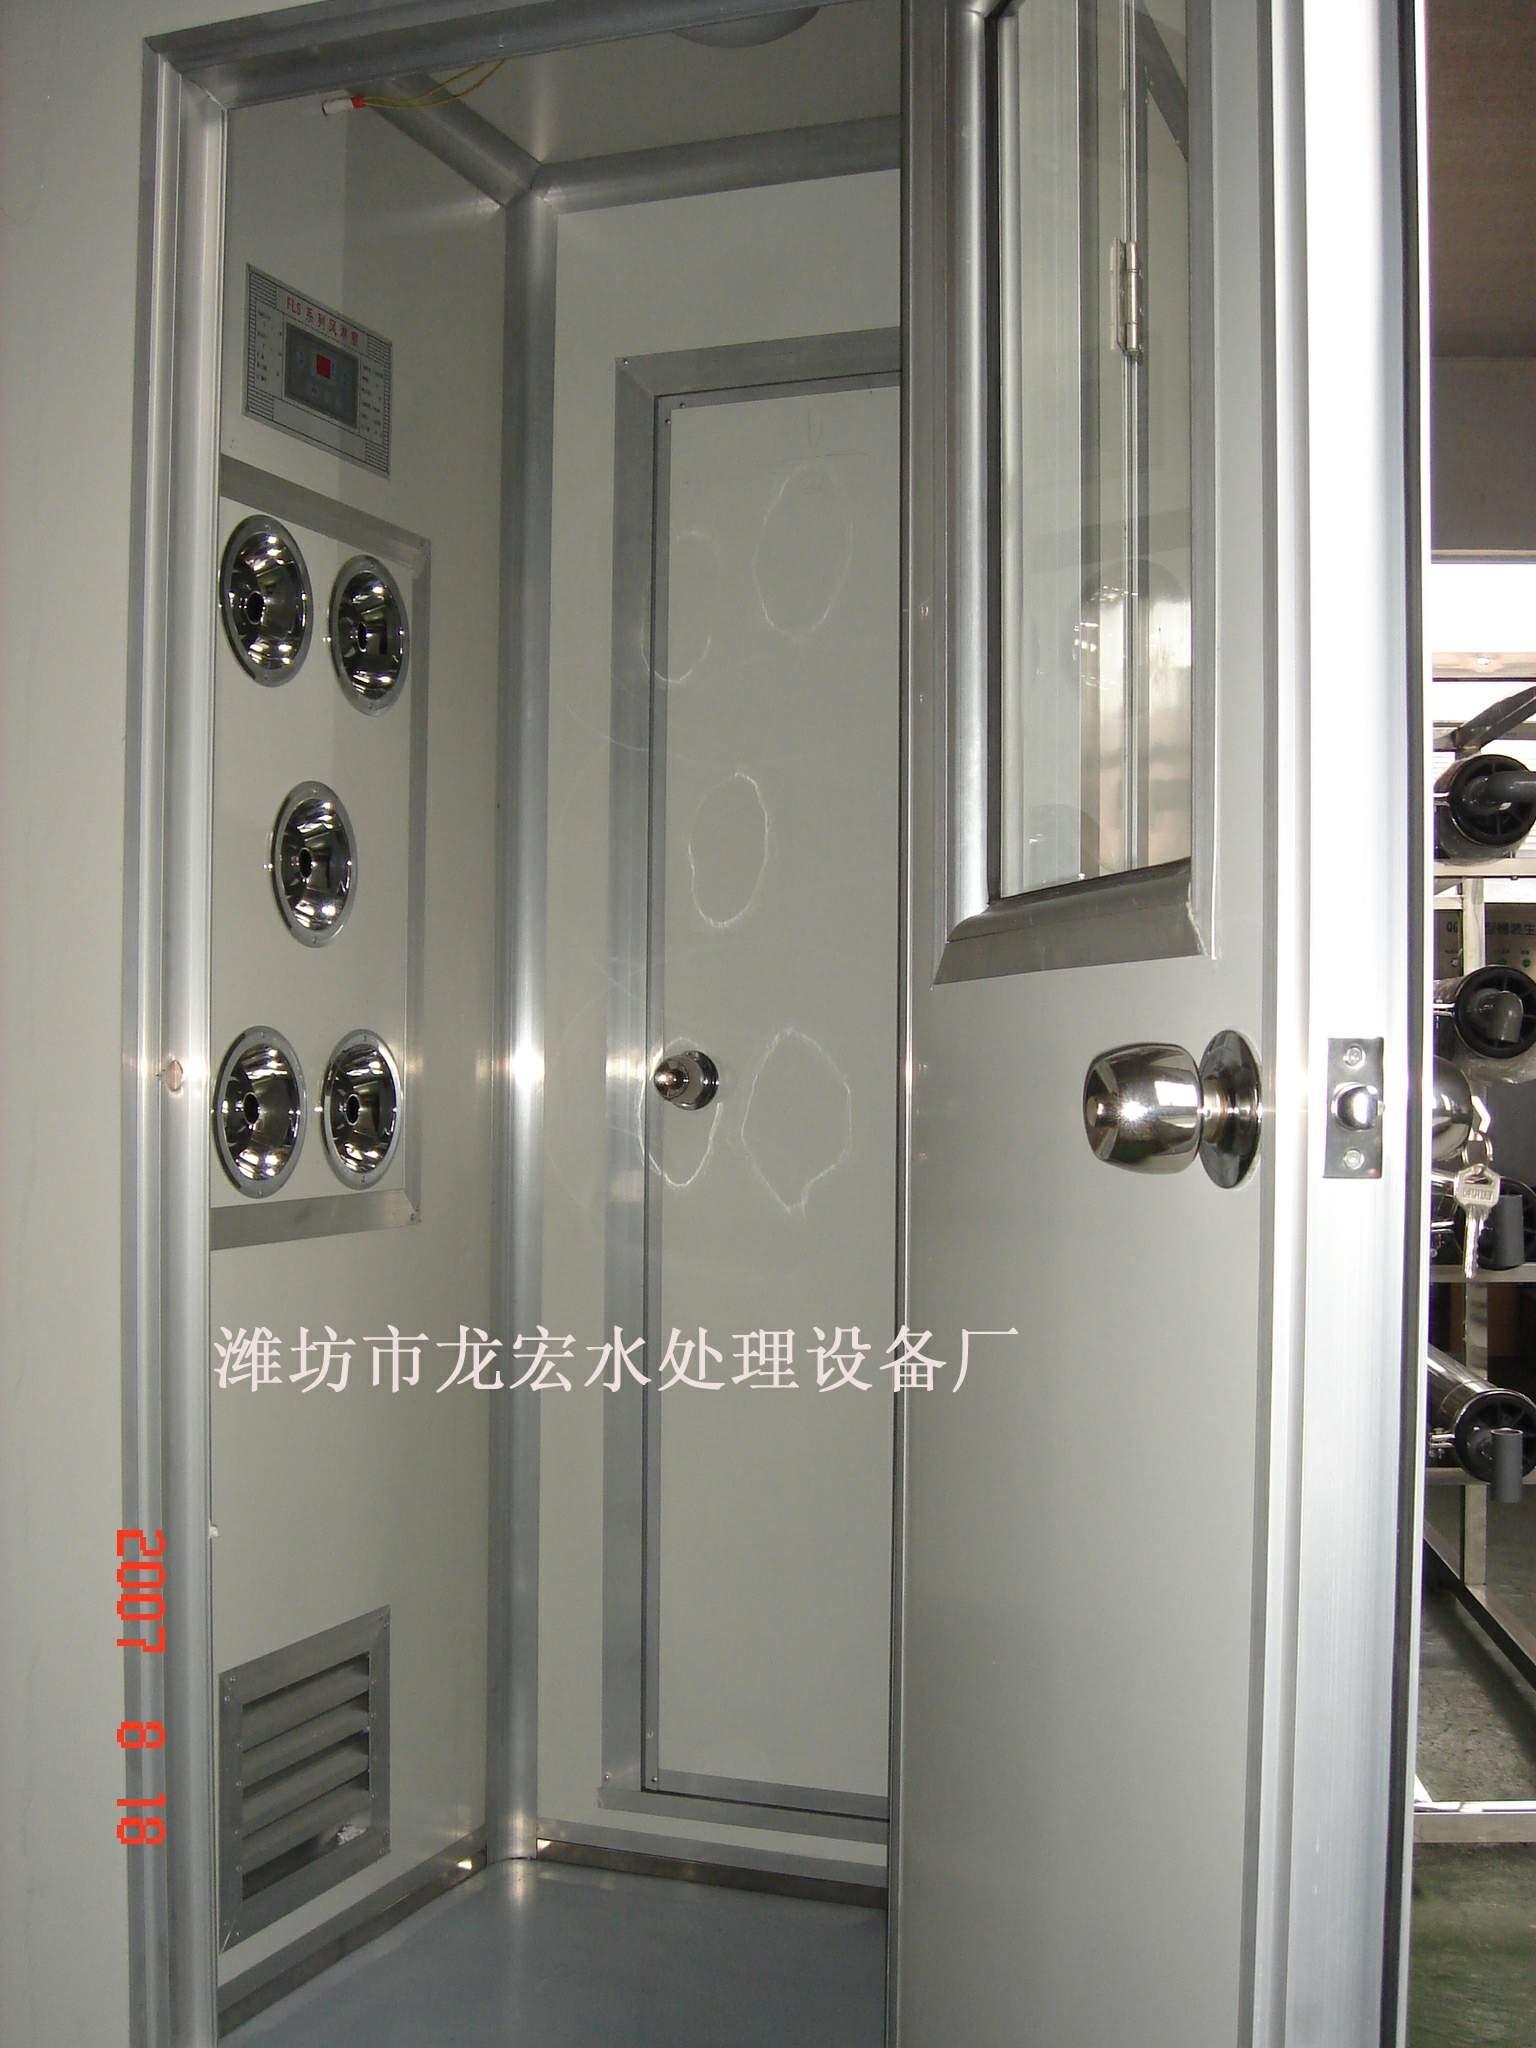 潍坊市龙宏-山东空气净化设备、山东qs认证设备